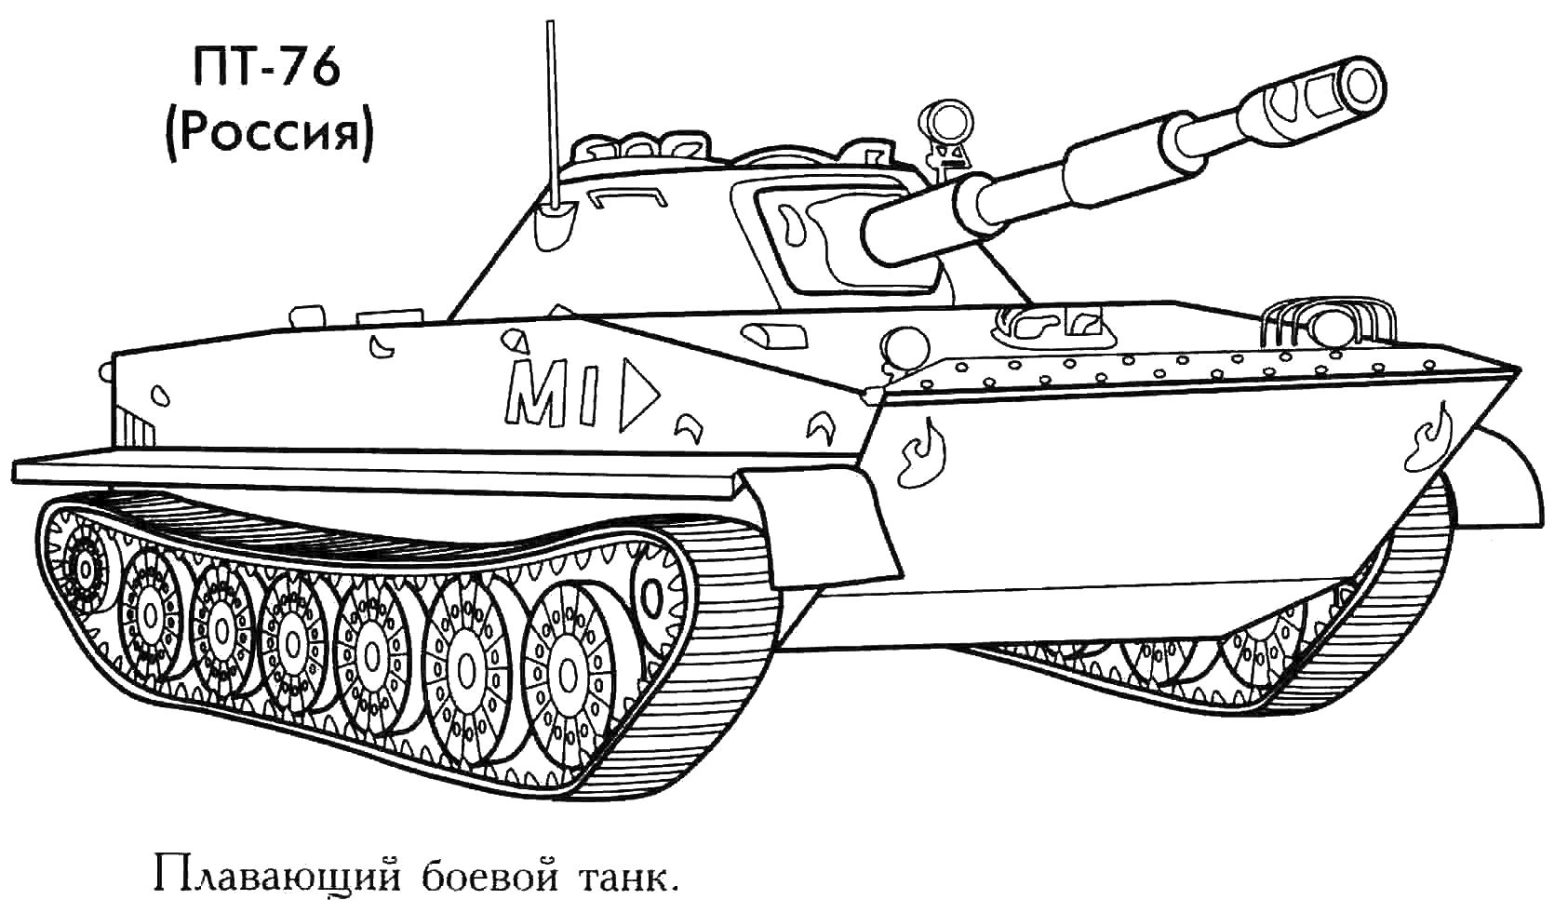 Раскраска плавающего боевого танка пт-76 для мальчиков (пт-76)